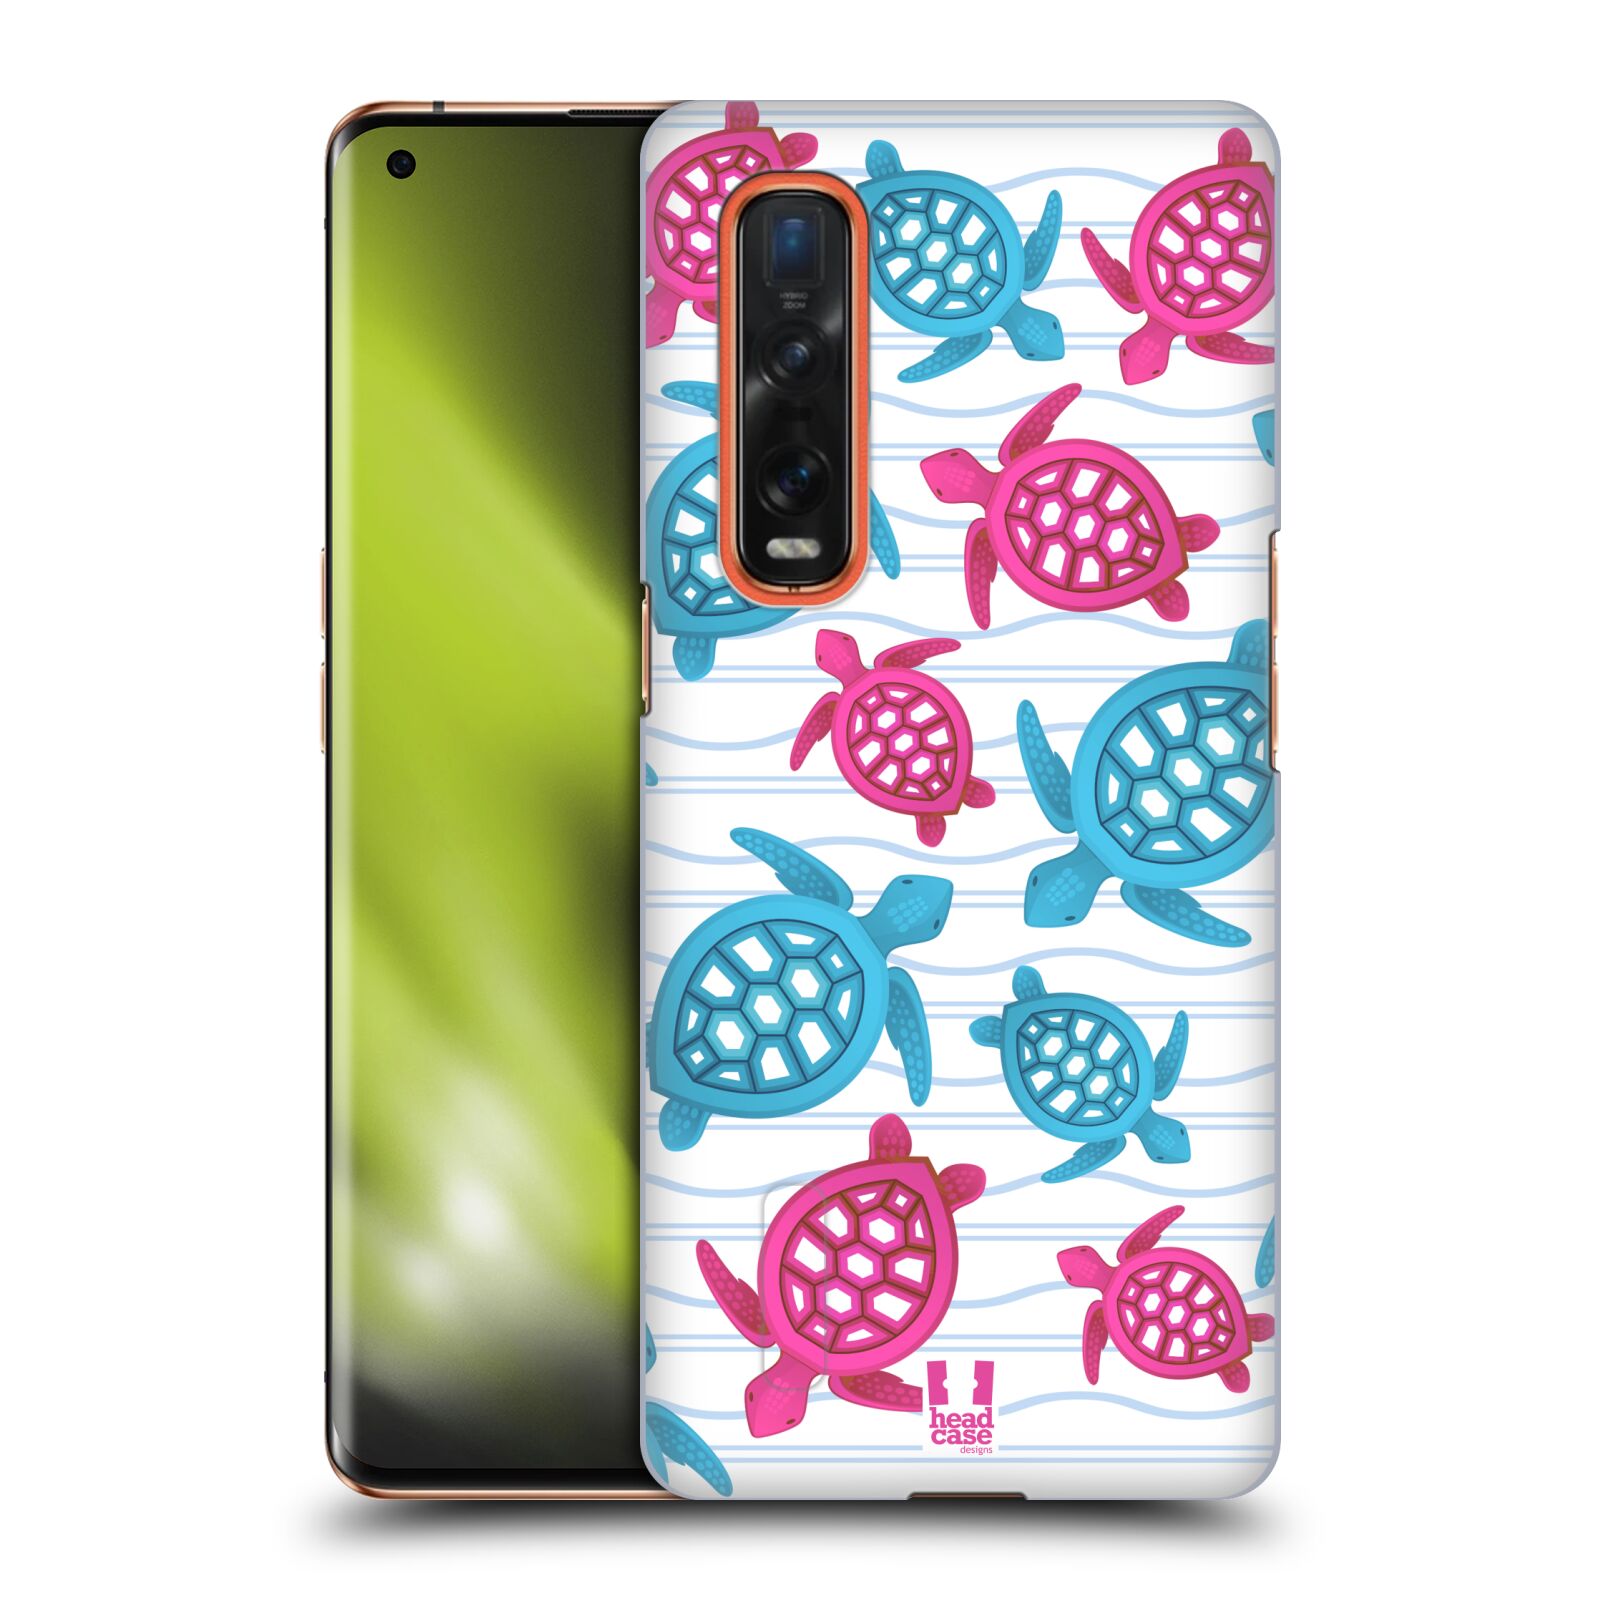 Zadní obal pro mobil Oppo Find X2 PRO - HEAD CASE - kreslený mořský vzor želvičky